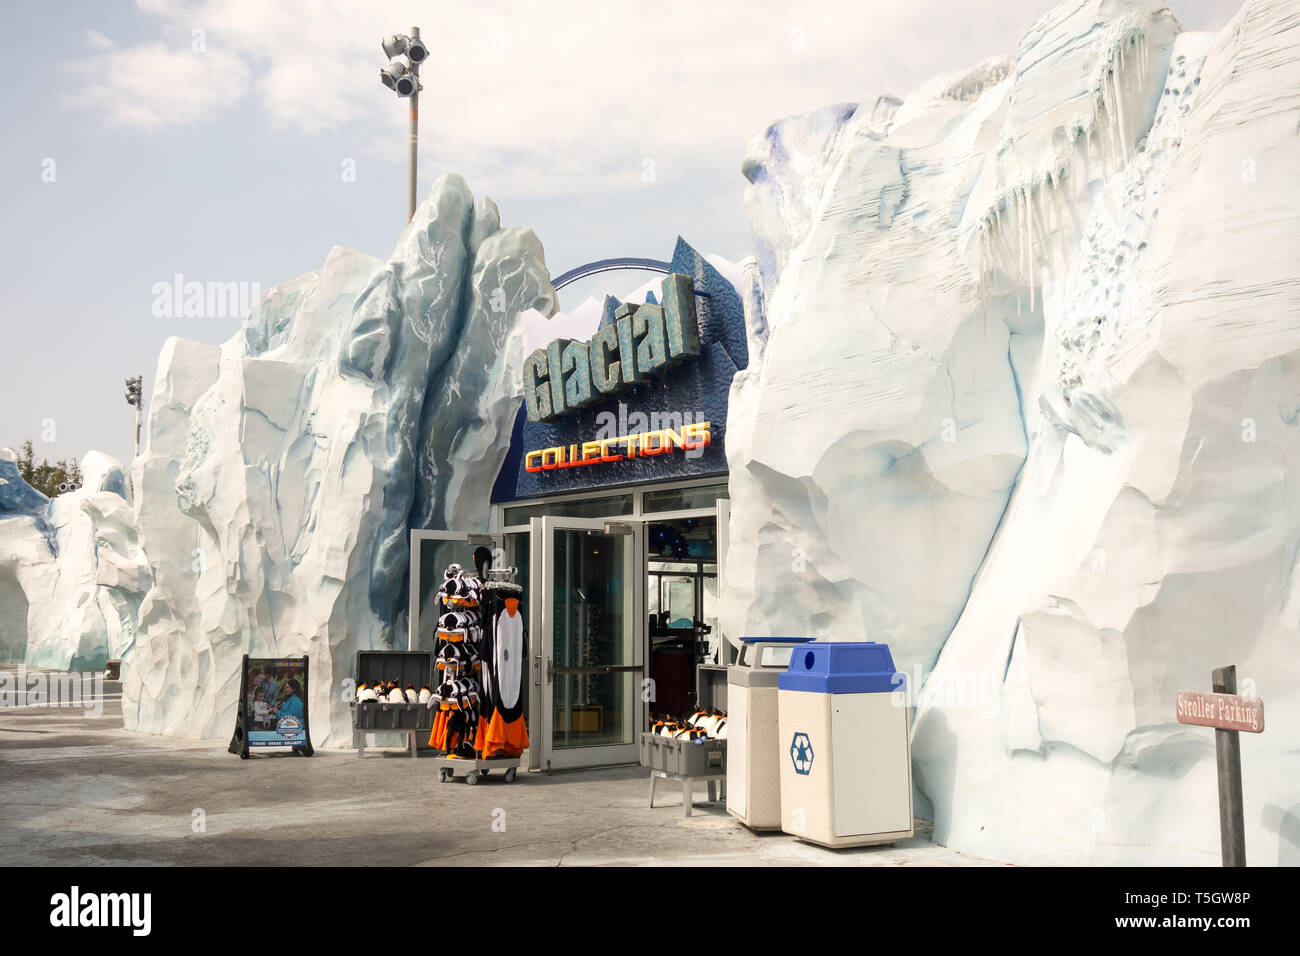 A souvenir shop called Glacial Collections at Seaworld in Orlando, Florida. Stock Photo